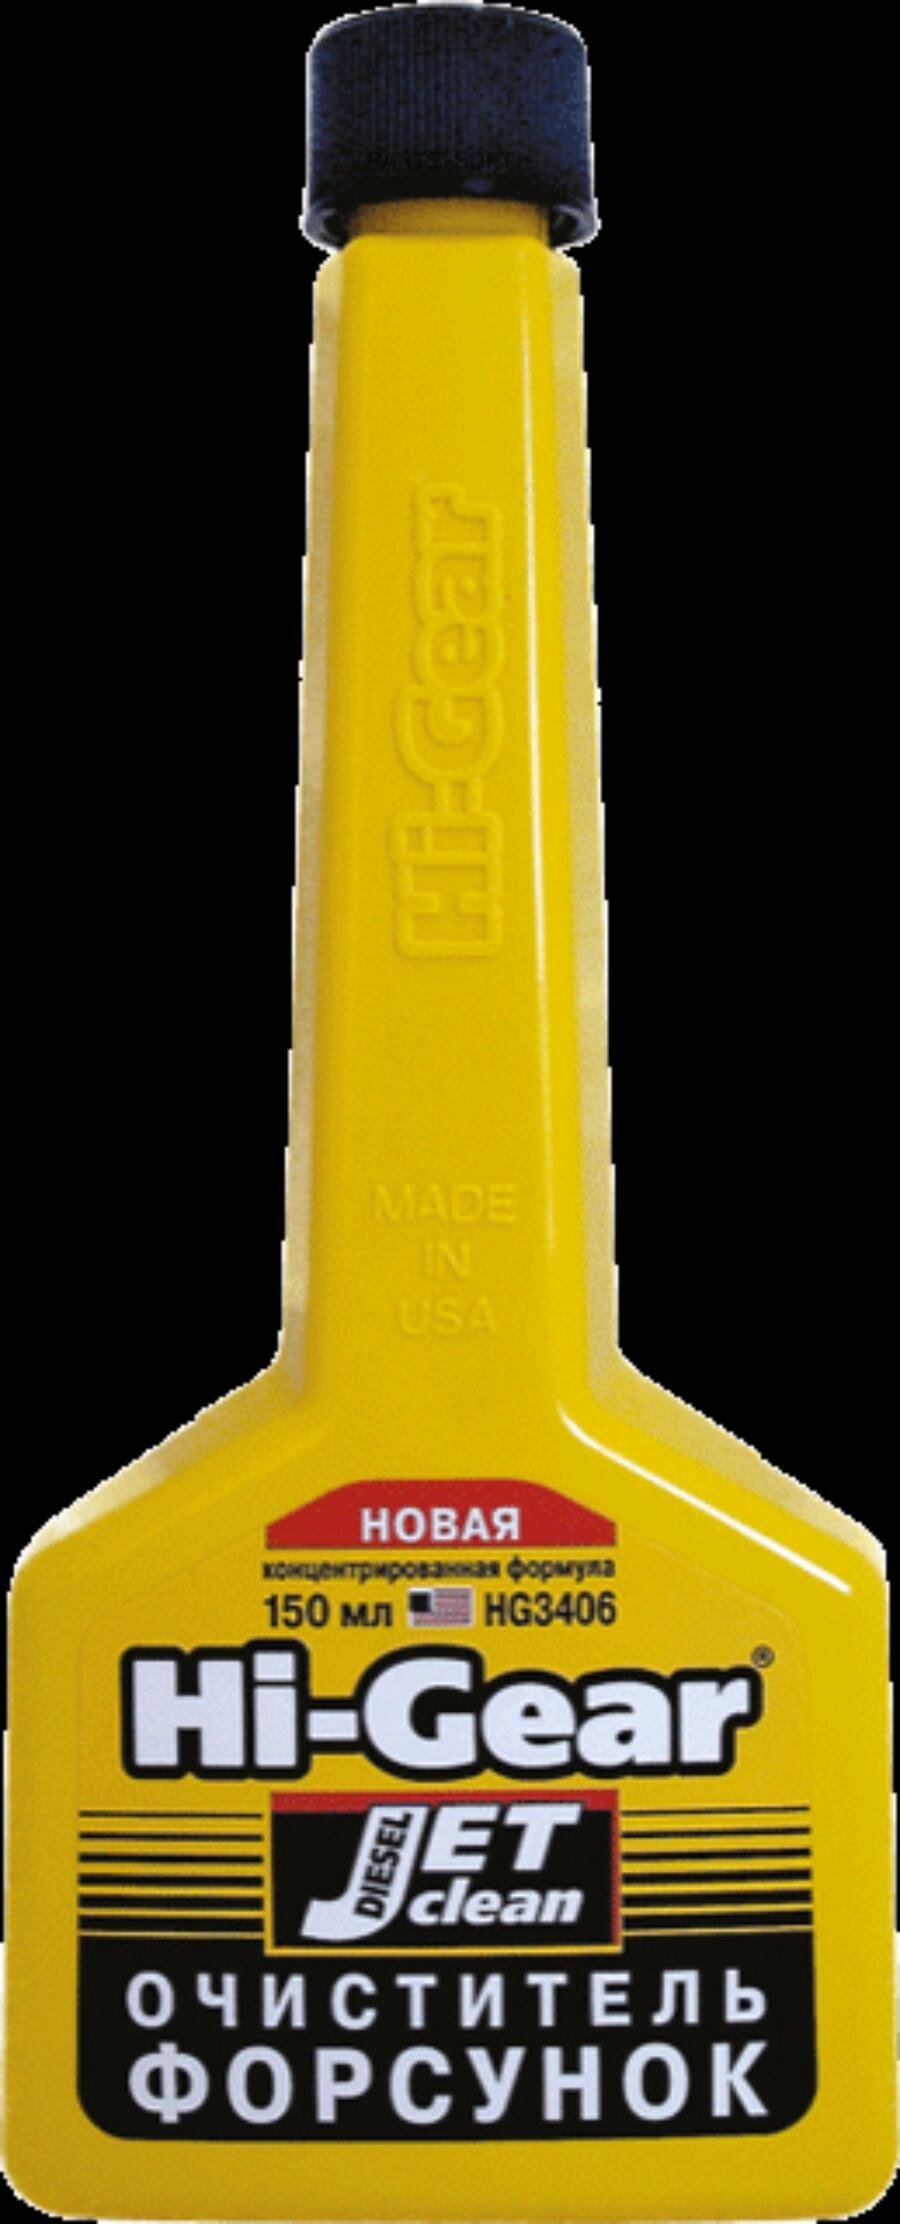 Hi-Gear HG3406 Очиститель форсунок для дизеля (концентрированная формула)